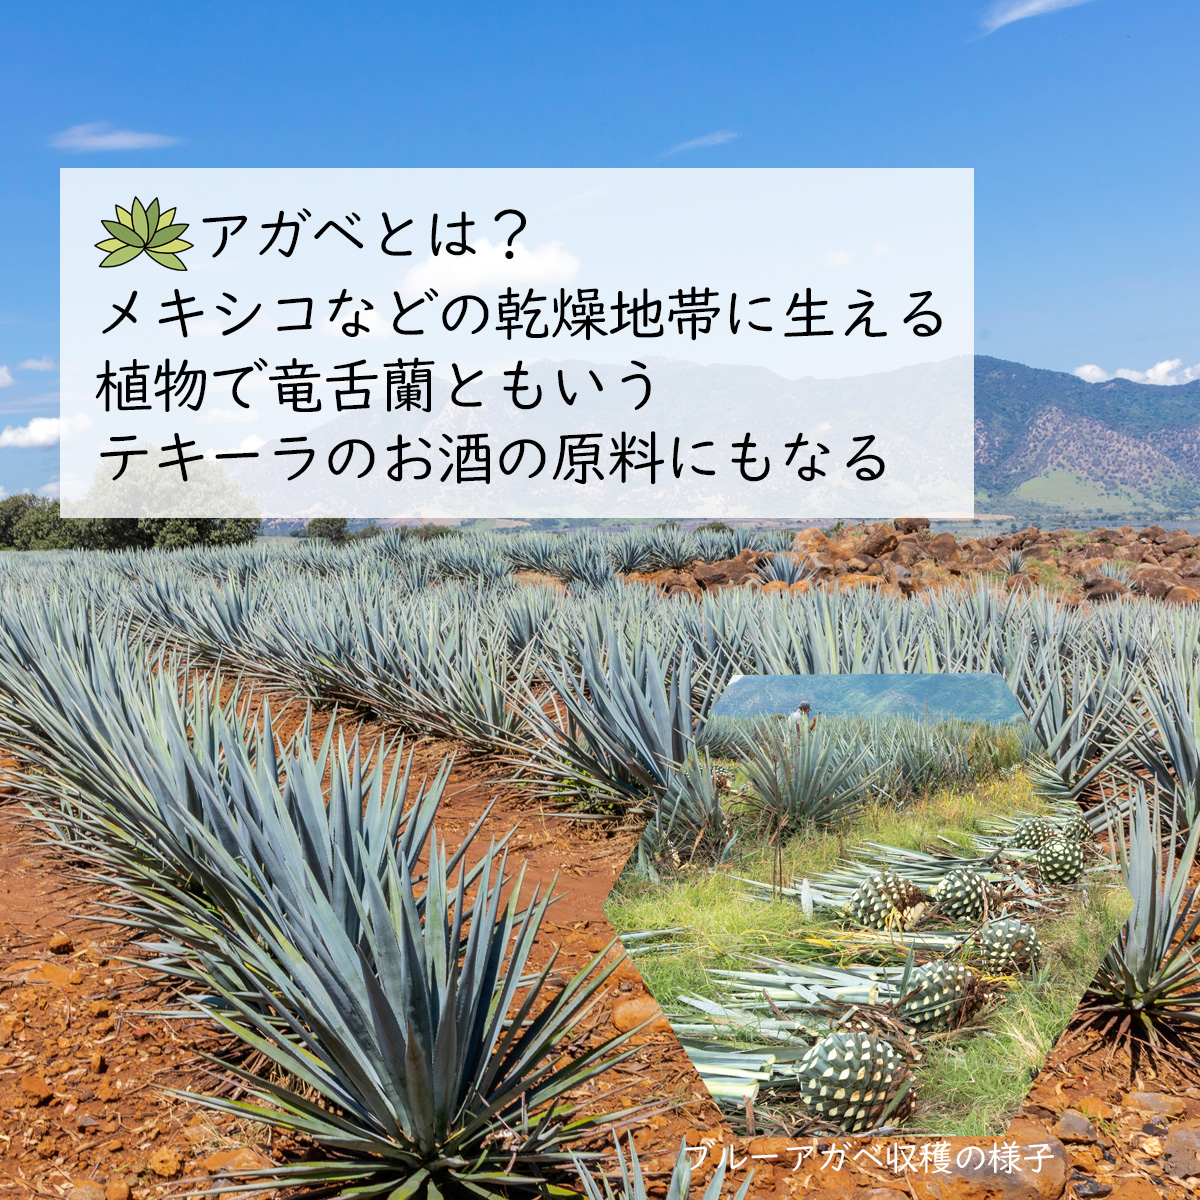 アガベとは？メキシコなどの乾燥地帯に生える植物で竜舌蘭ともいうテキーラのお酒の原料にもなる